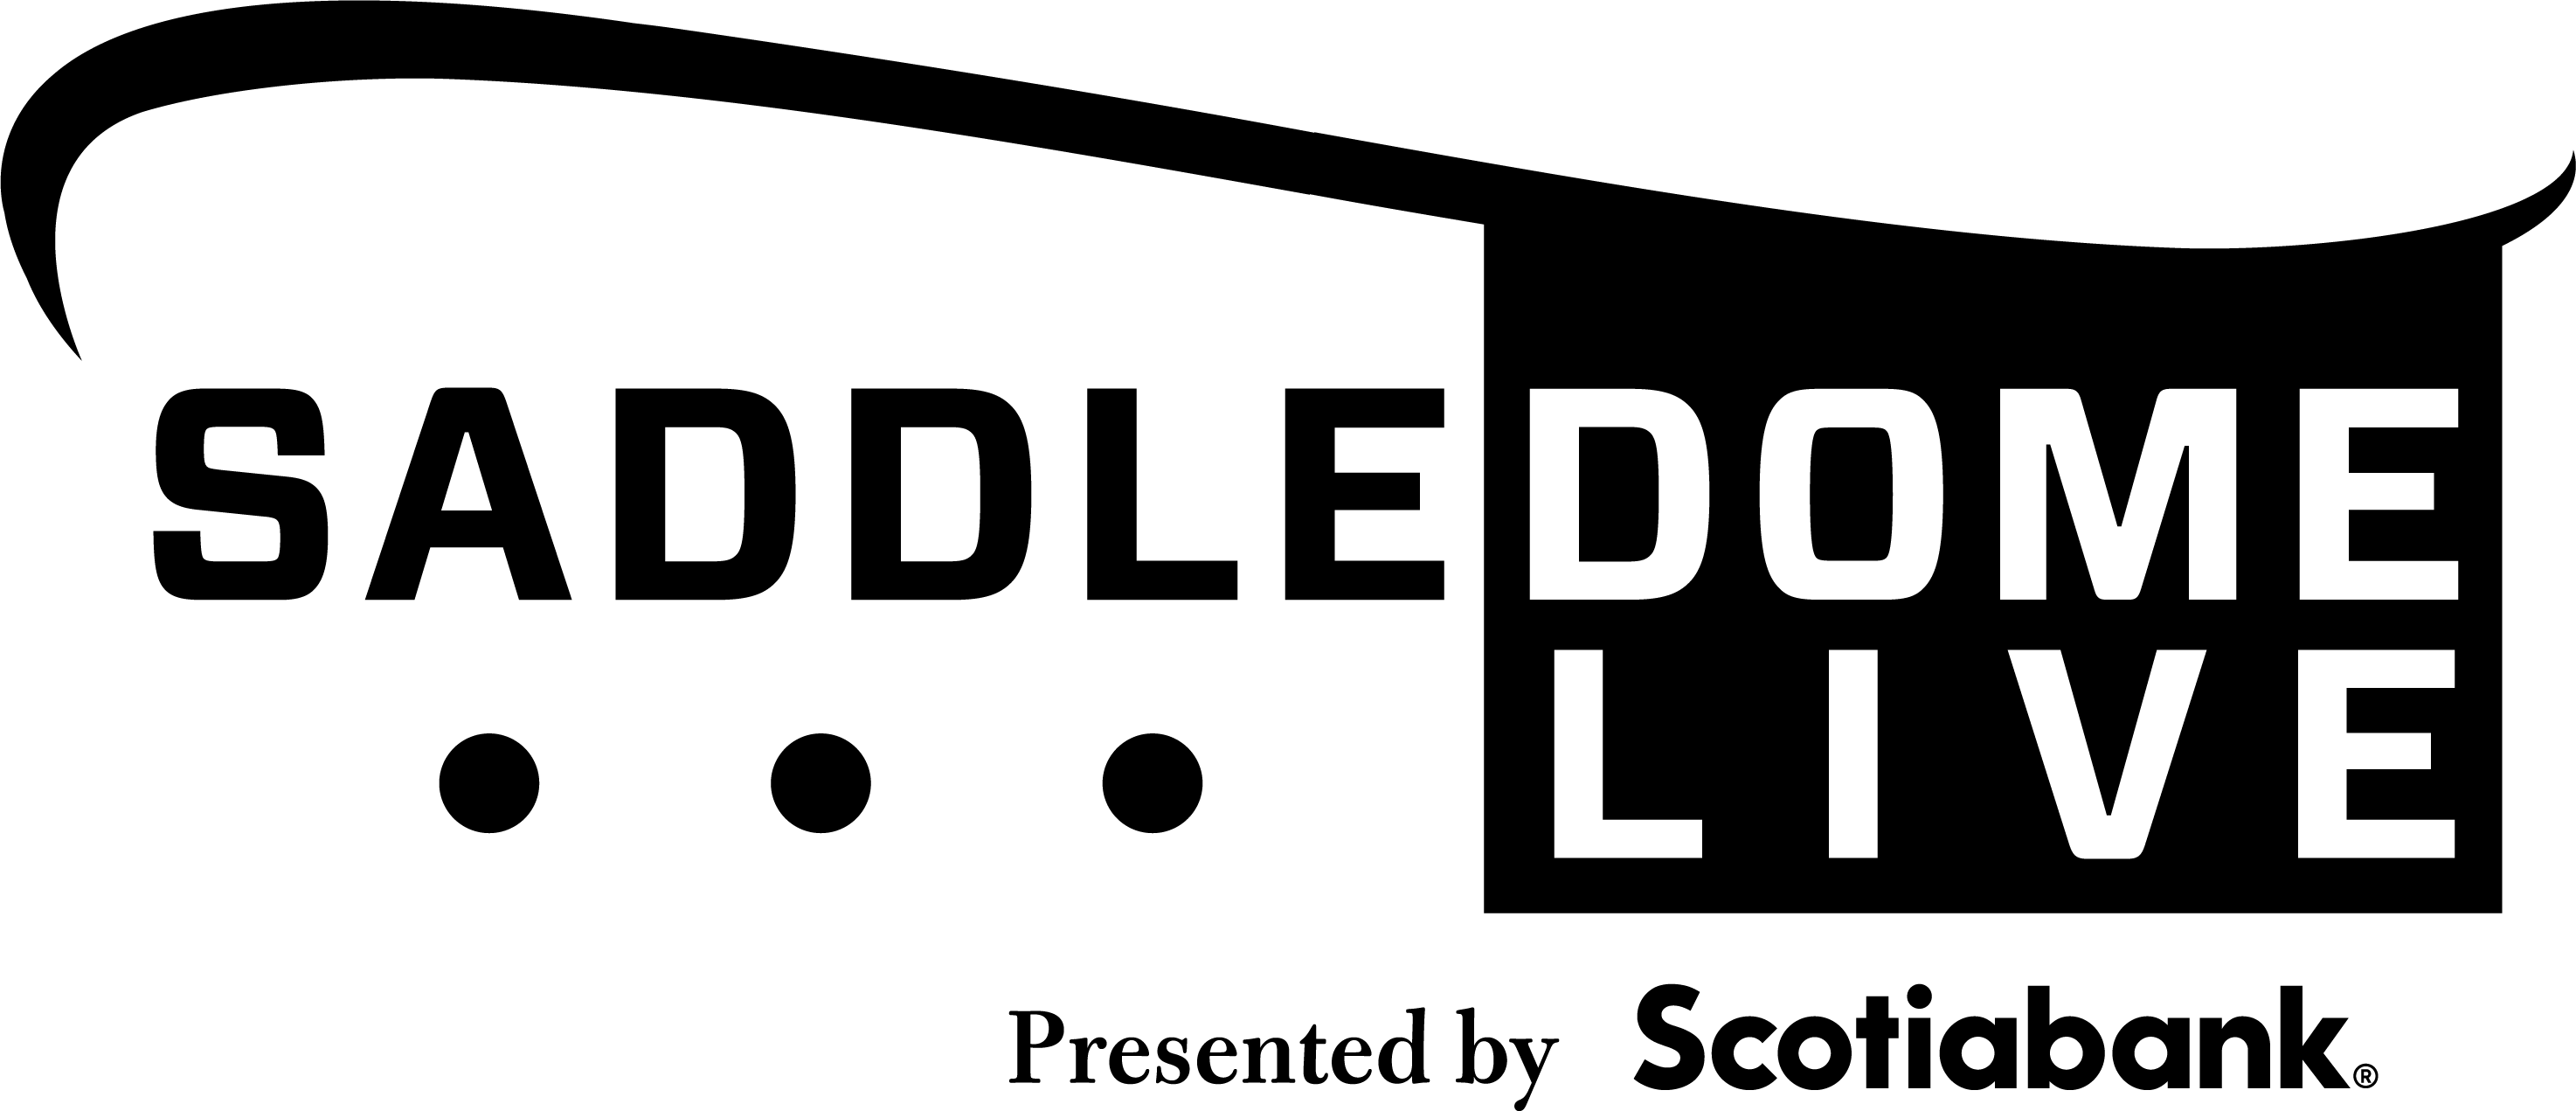 Saddledome Live logo in black